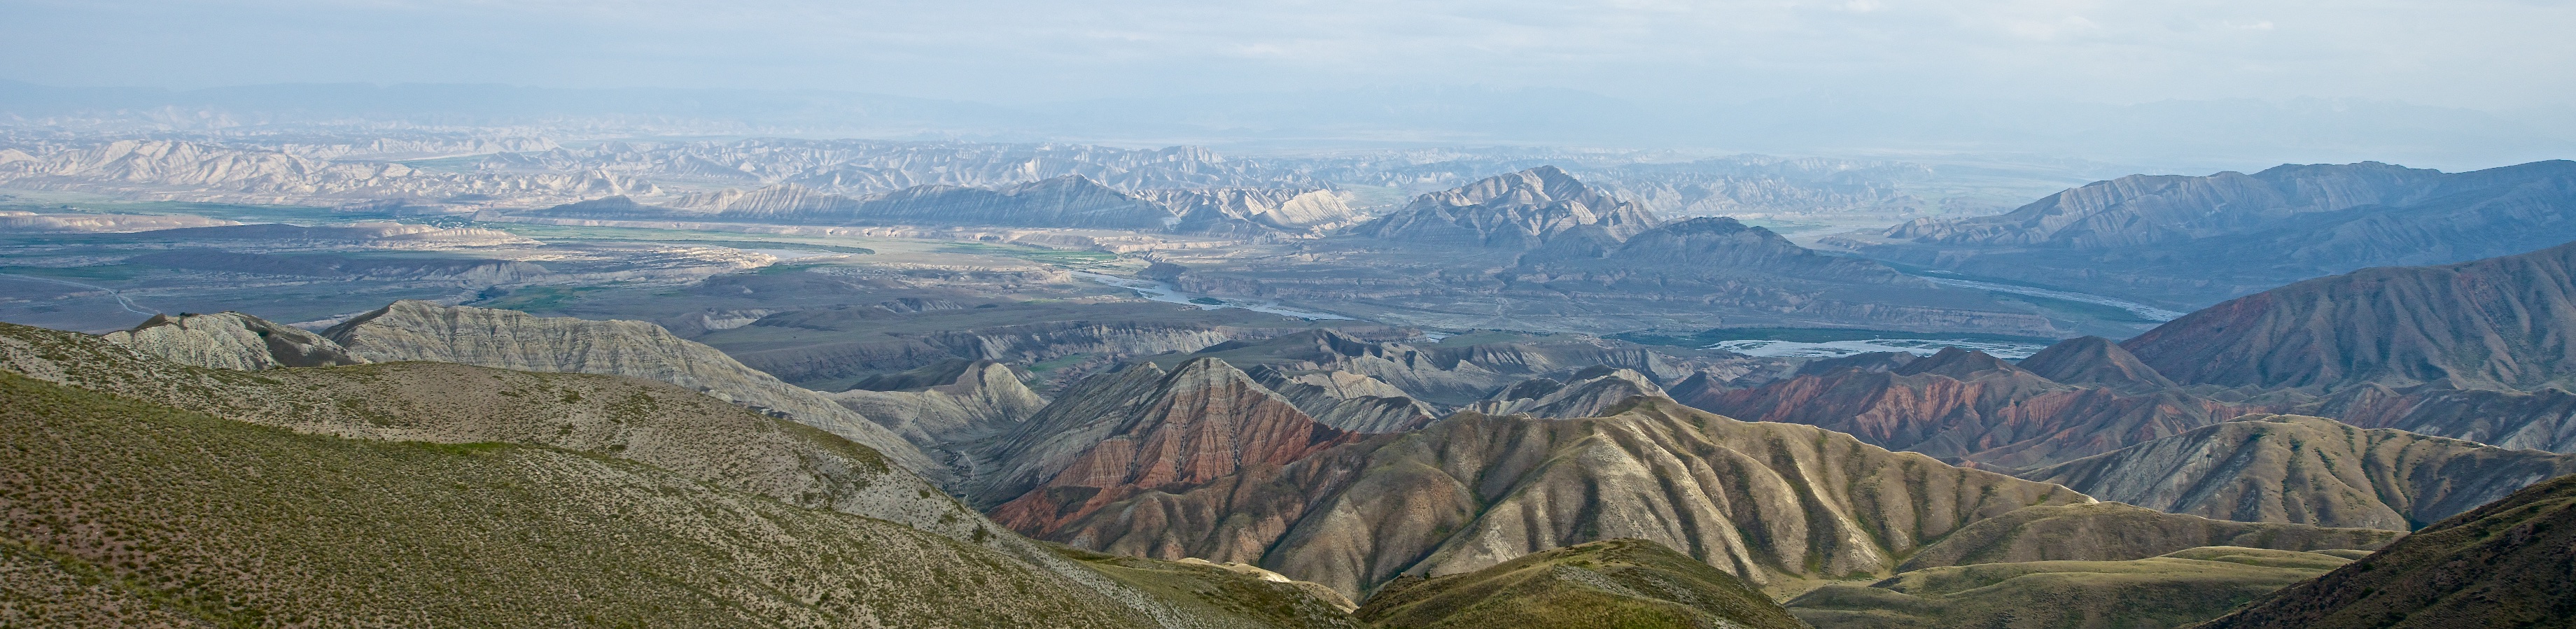 перевал Кара-Коо, Нарынская область